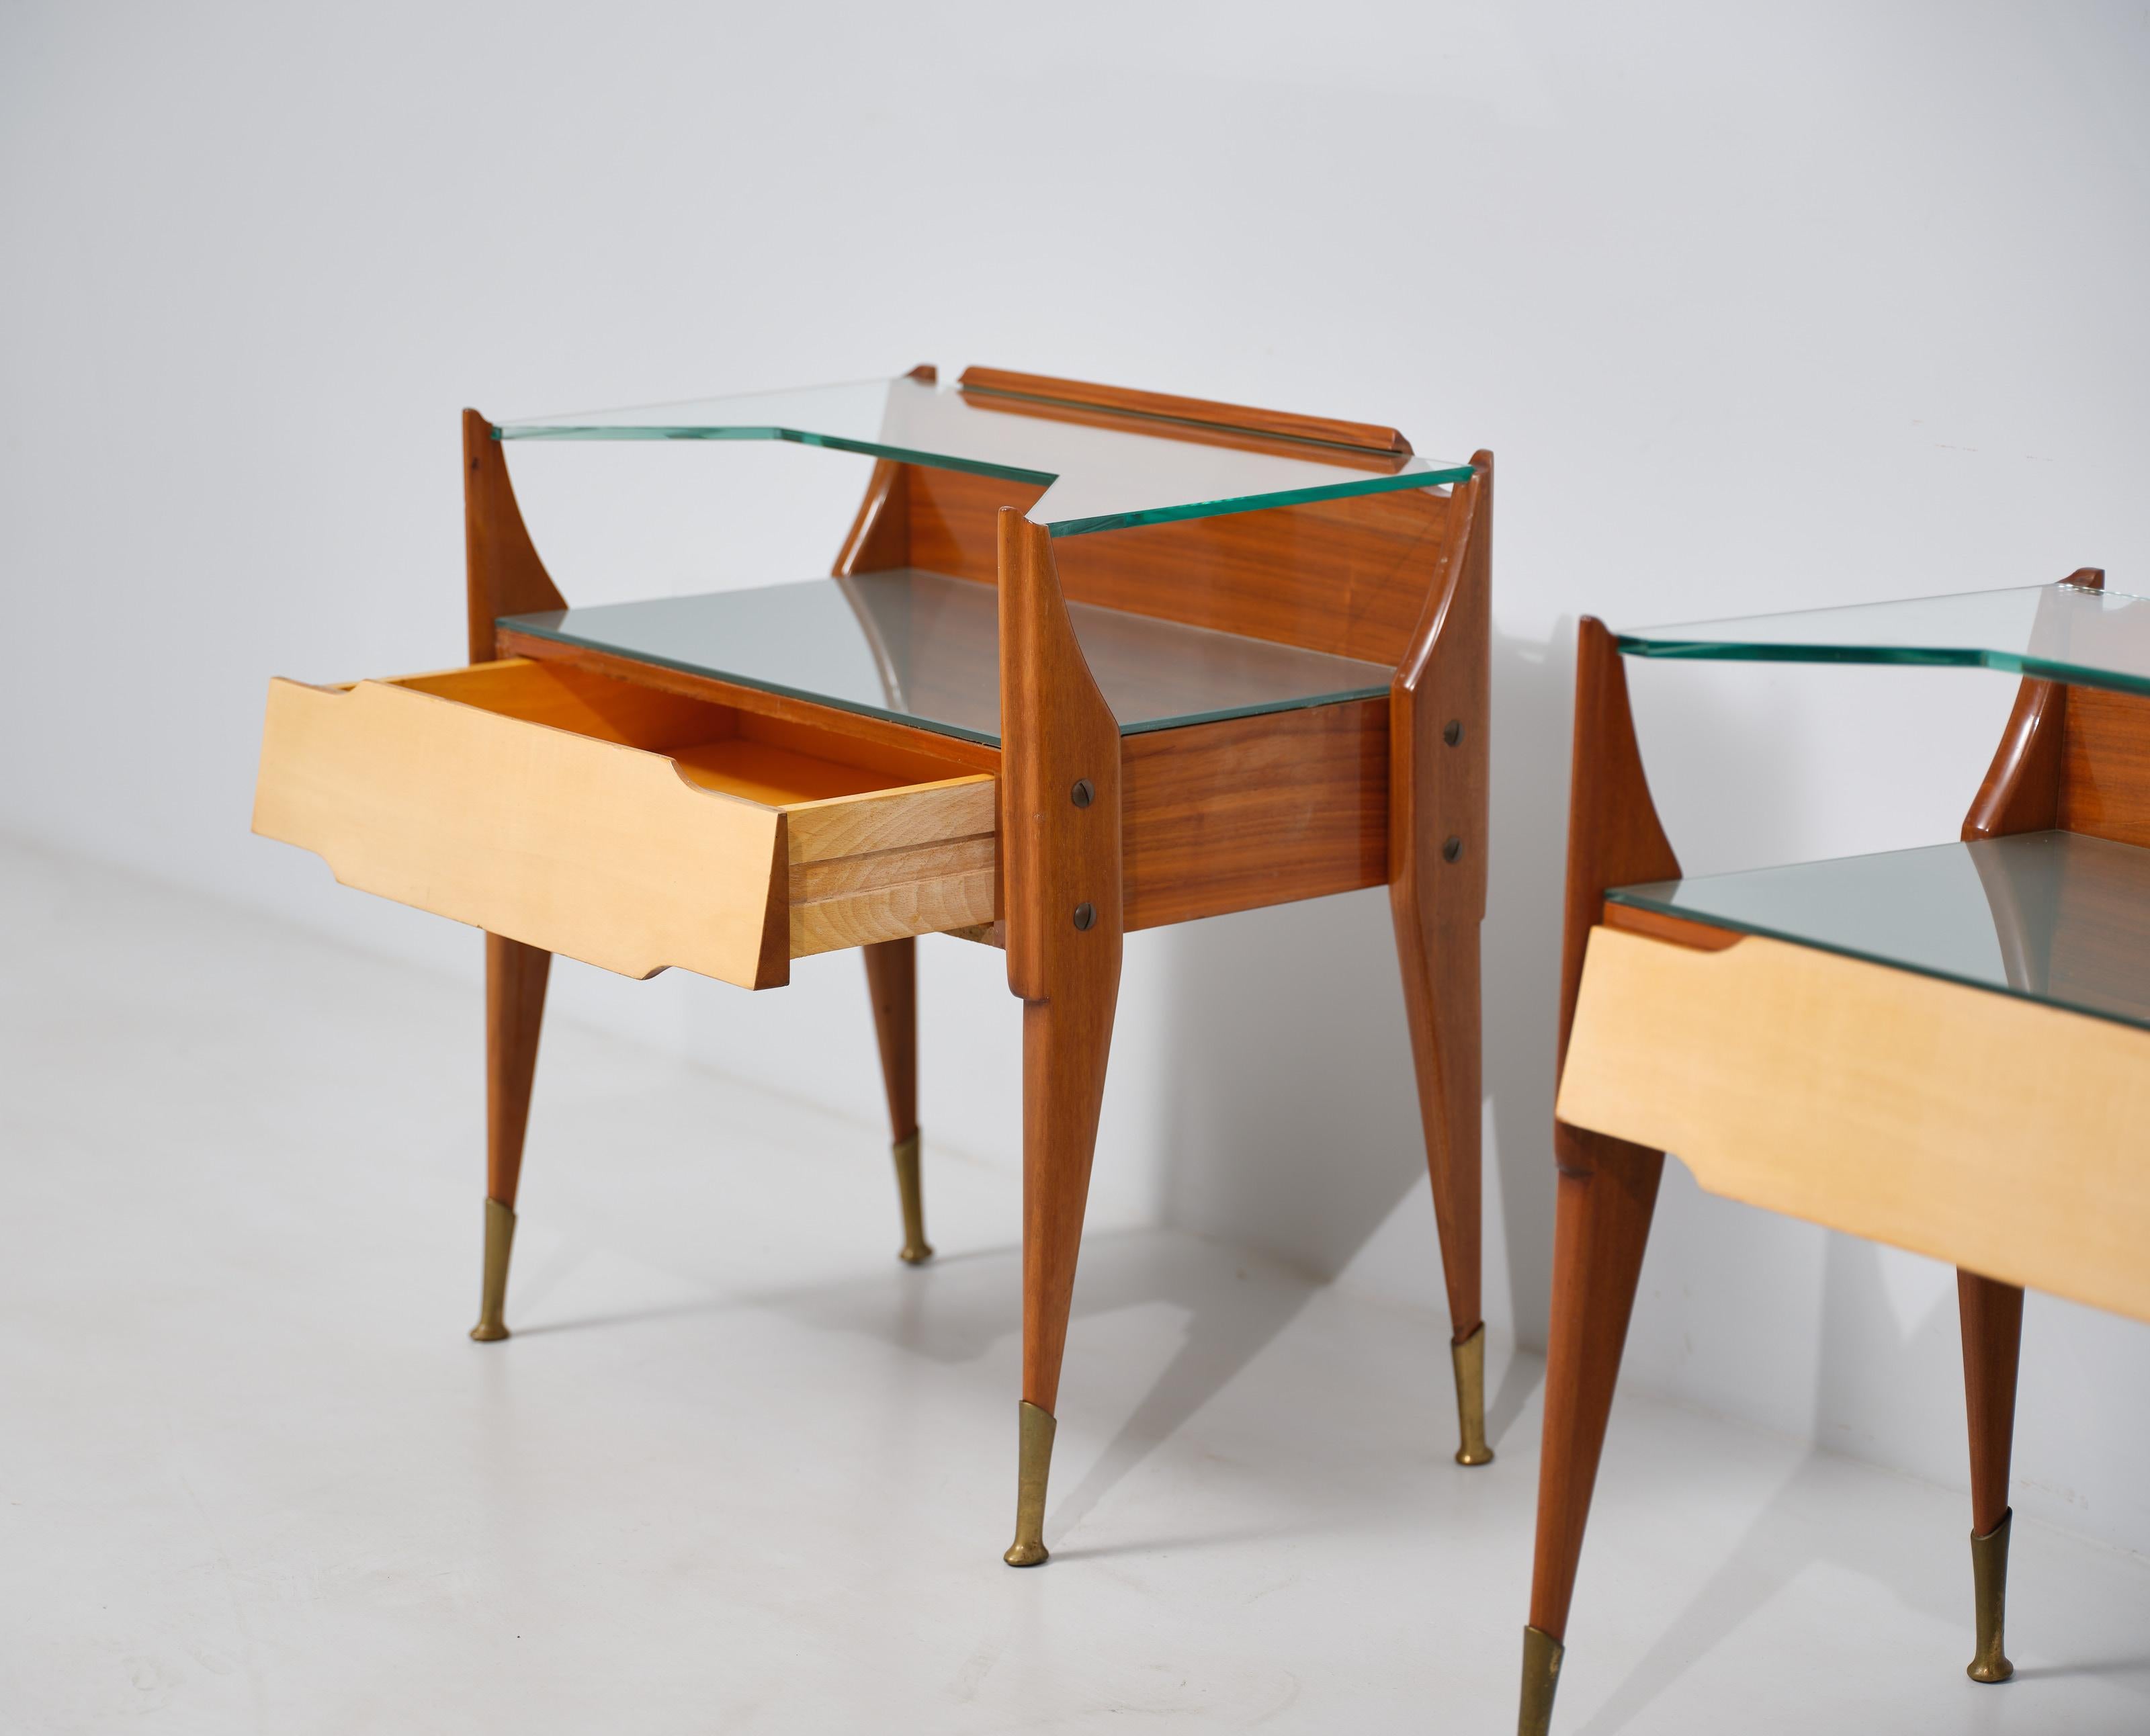 Brass Exquisite Italian Craftsmanship: Vintage Teak Wood Bedside Tables For Sale